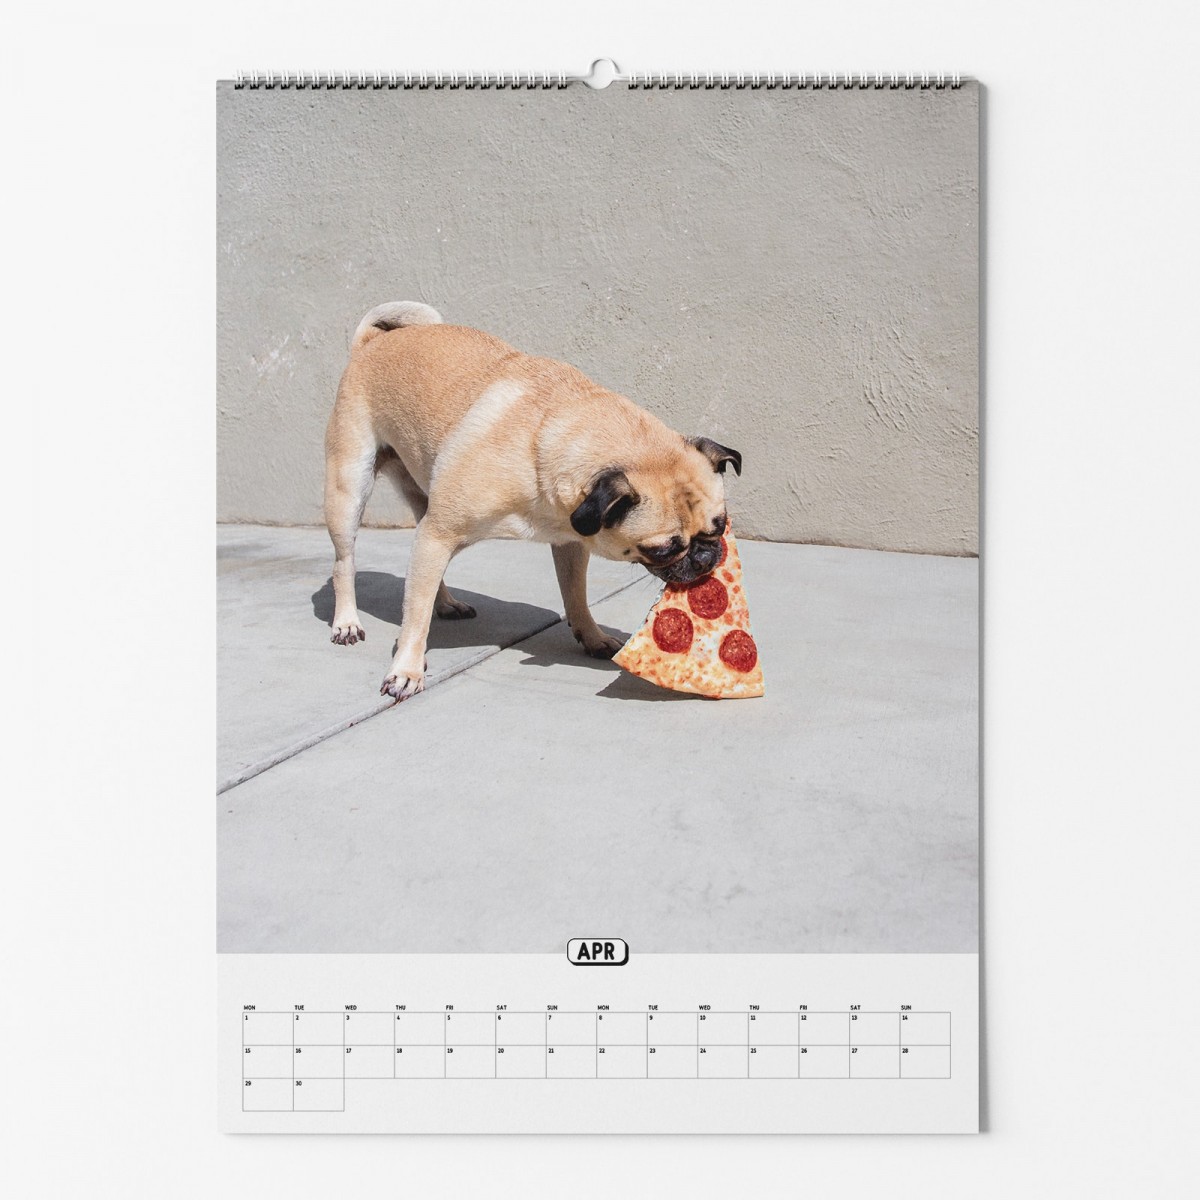 "Pizza In The Wild" Fotokalender 2024